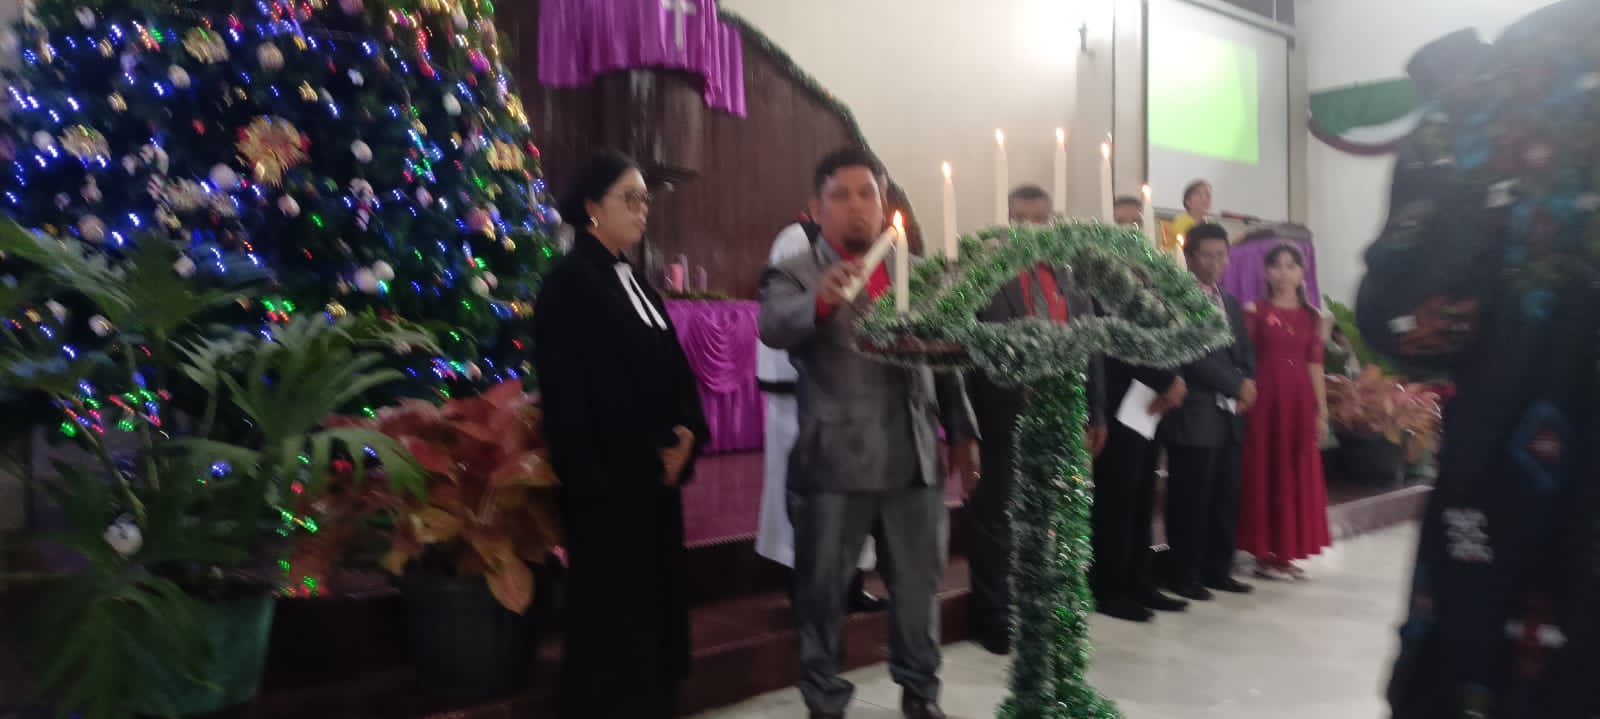 Perayaan Natal Sirajaoloan Padang Sidimpuan Meriah: Hotler Manullang, Jamester Manullang dan Ropinna Hasibuan Terima Kartu Jamsostek